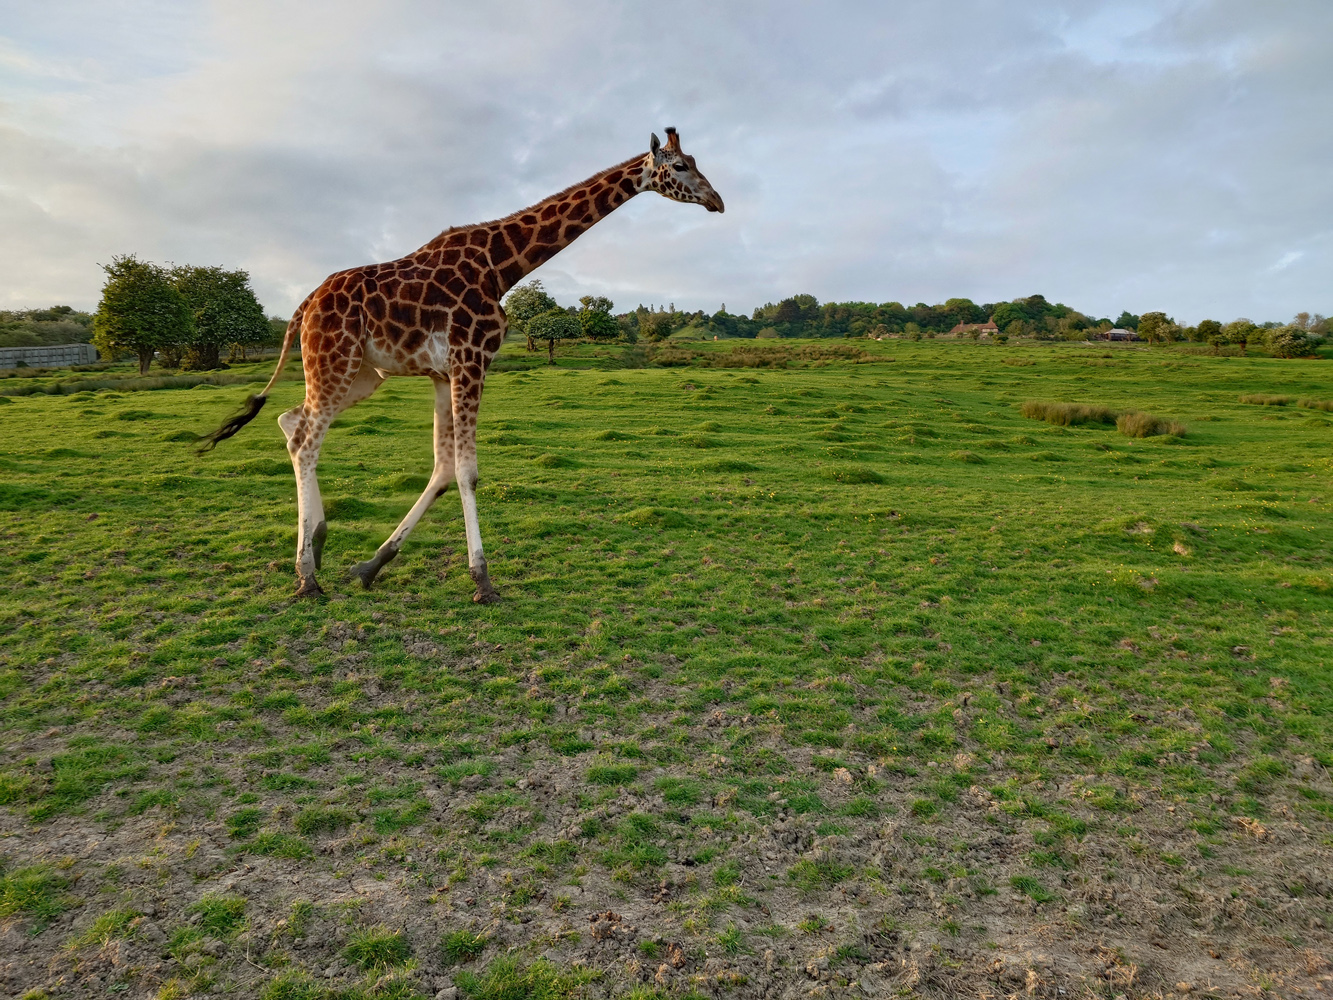 Sony Xperia 1 VI camera samples giraffe